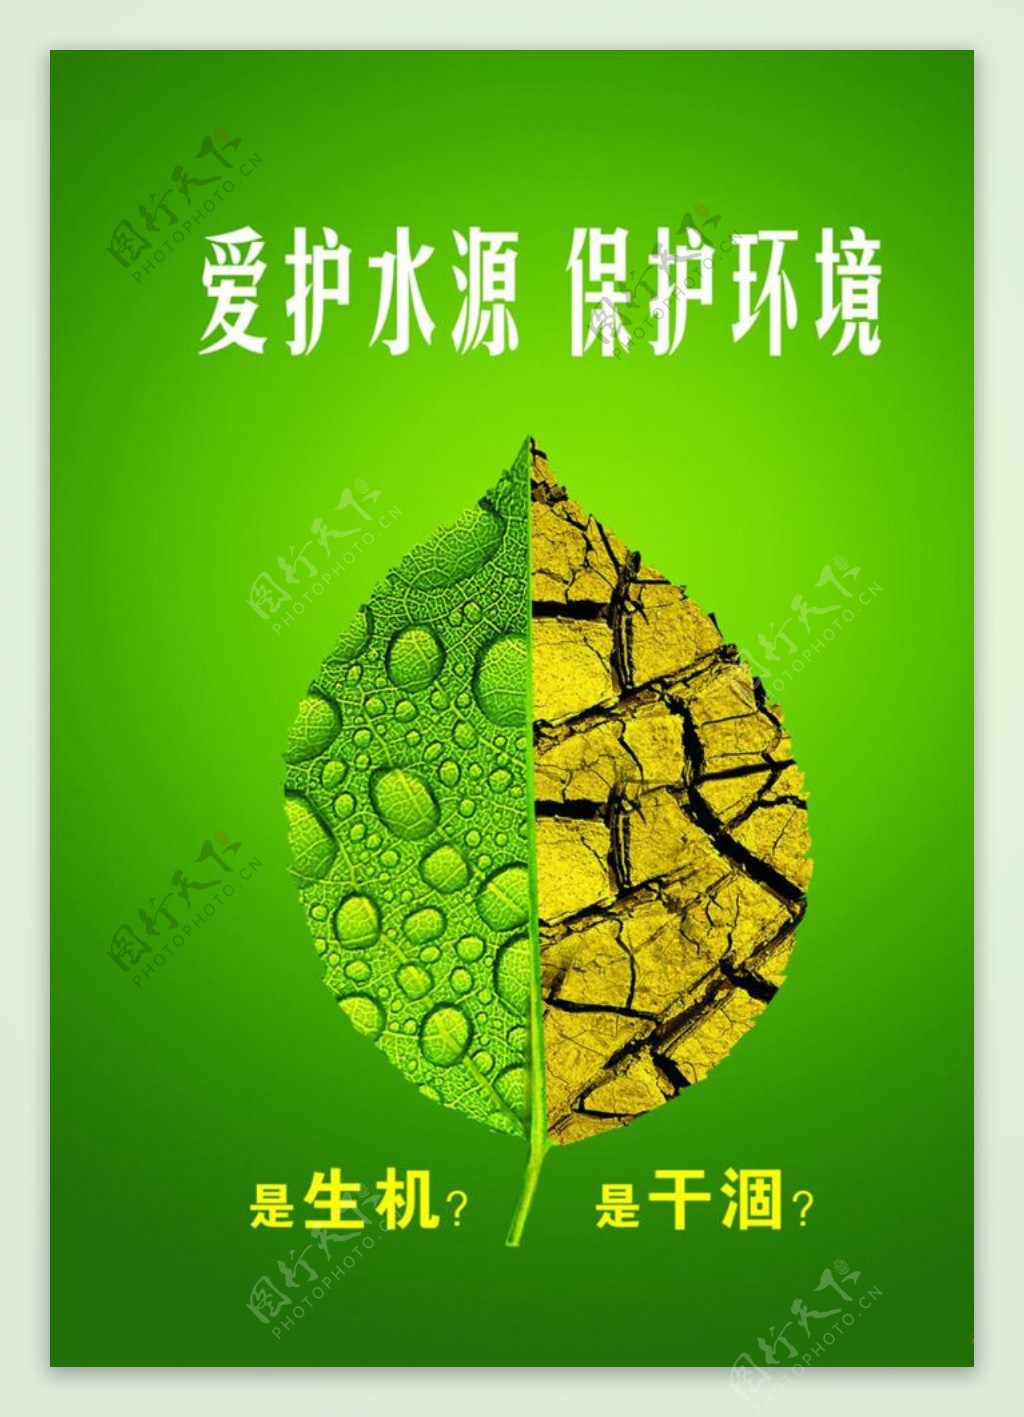 环保海报宣传活动模板源文件设计